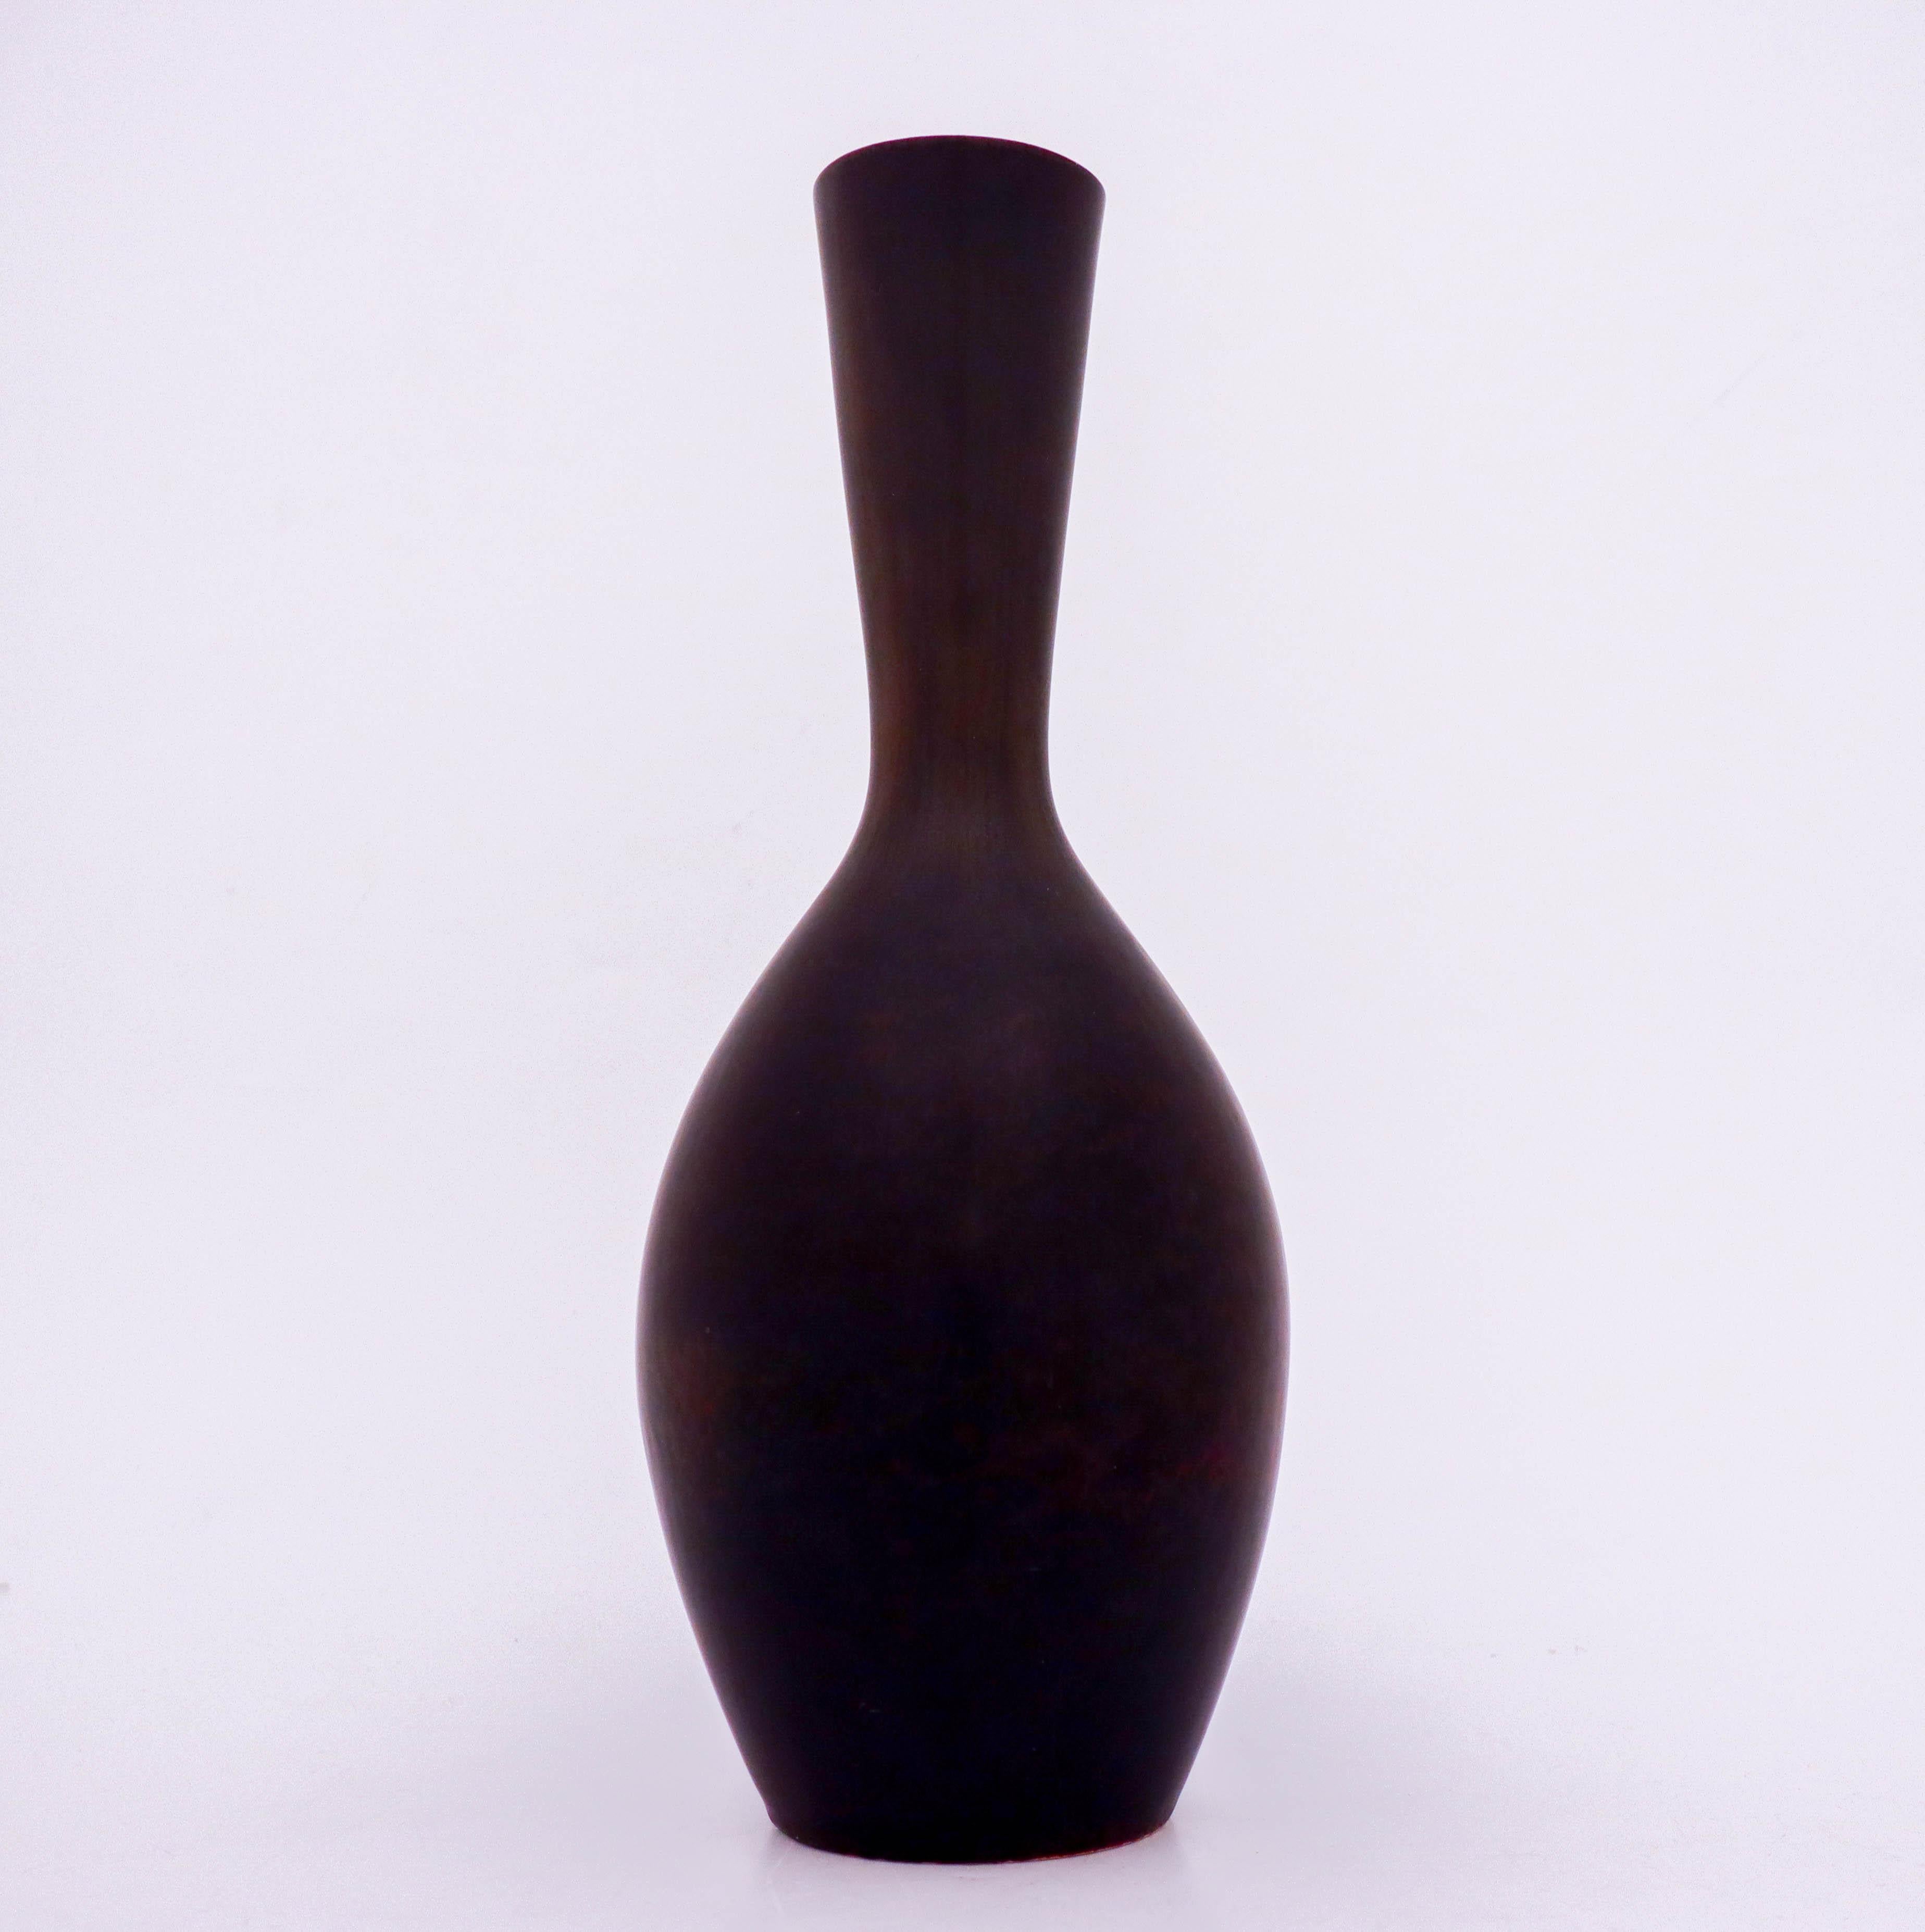 Grand vase de Carl-Harry Stålhane avec une belle glaçure brune et noire. Il a été fabriqué dans les années 1950 et est en excellent état.